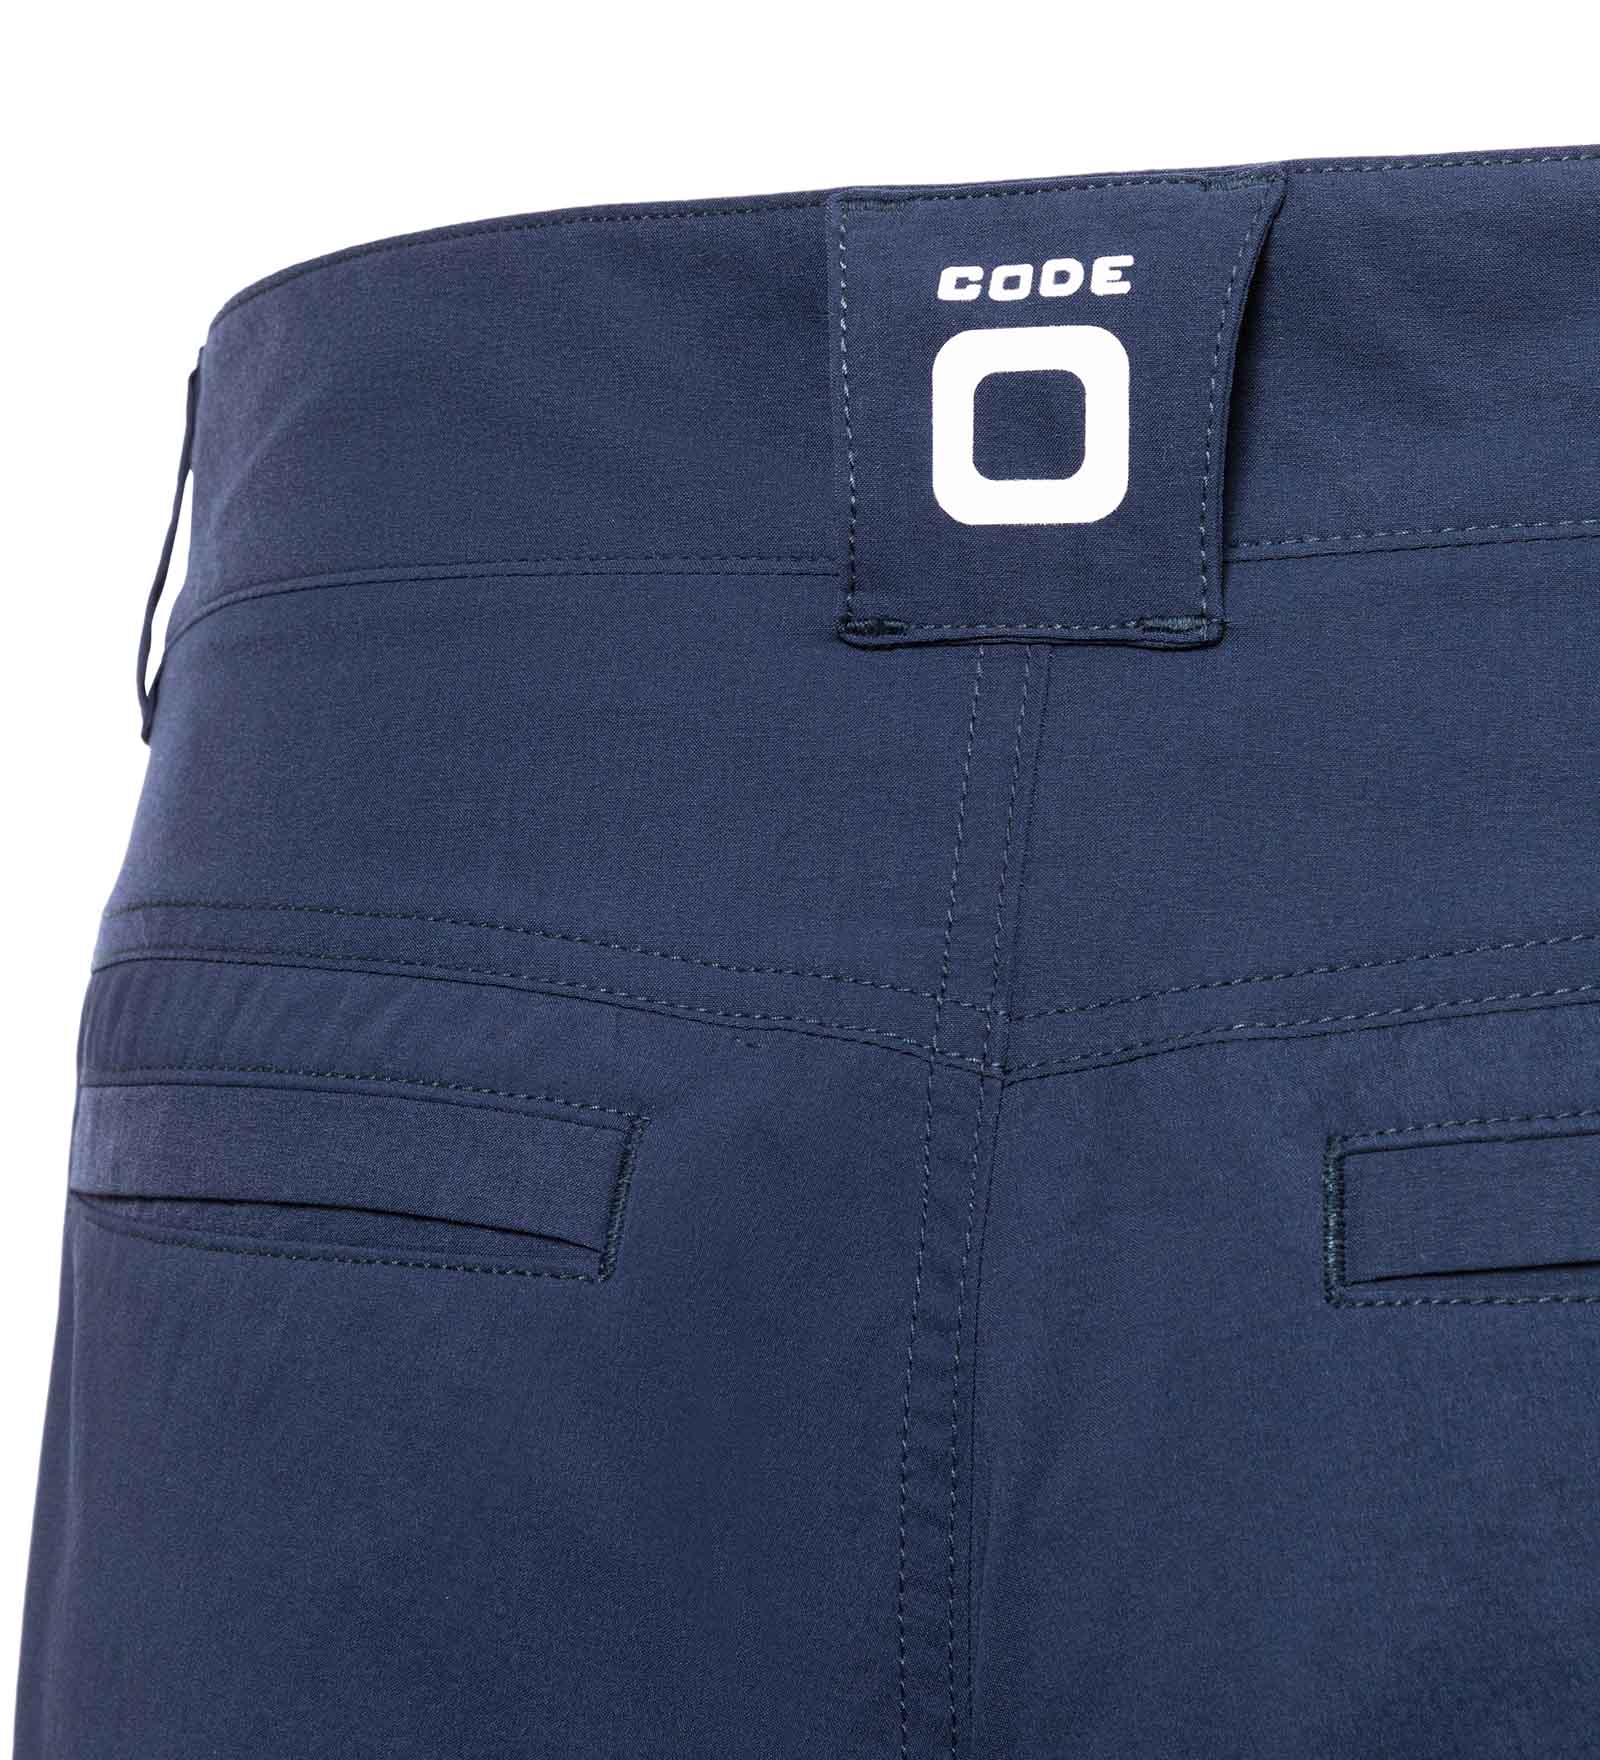 CODE-ZERO Shorts Men Club Navy 3XL | CODE-ZERO Blue